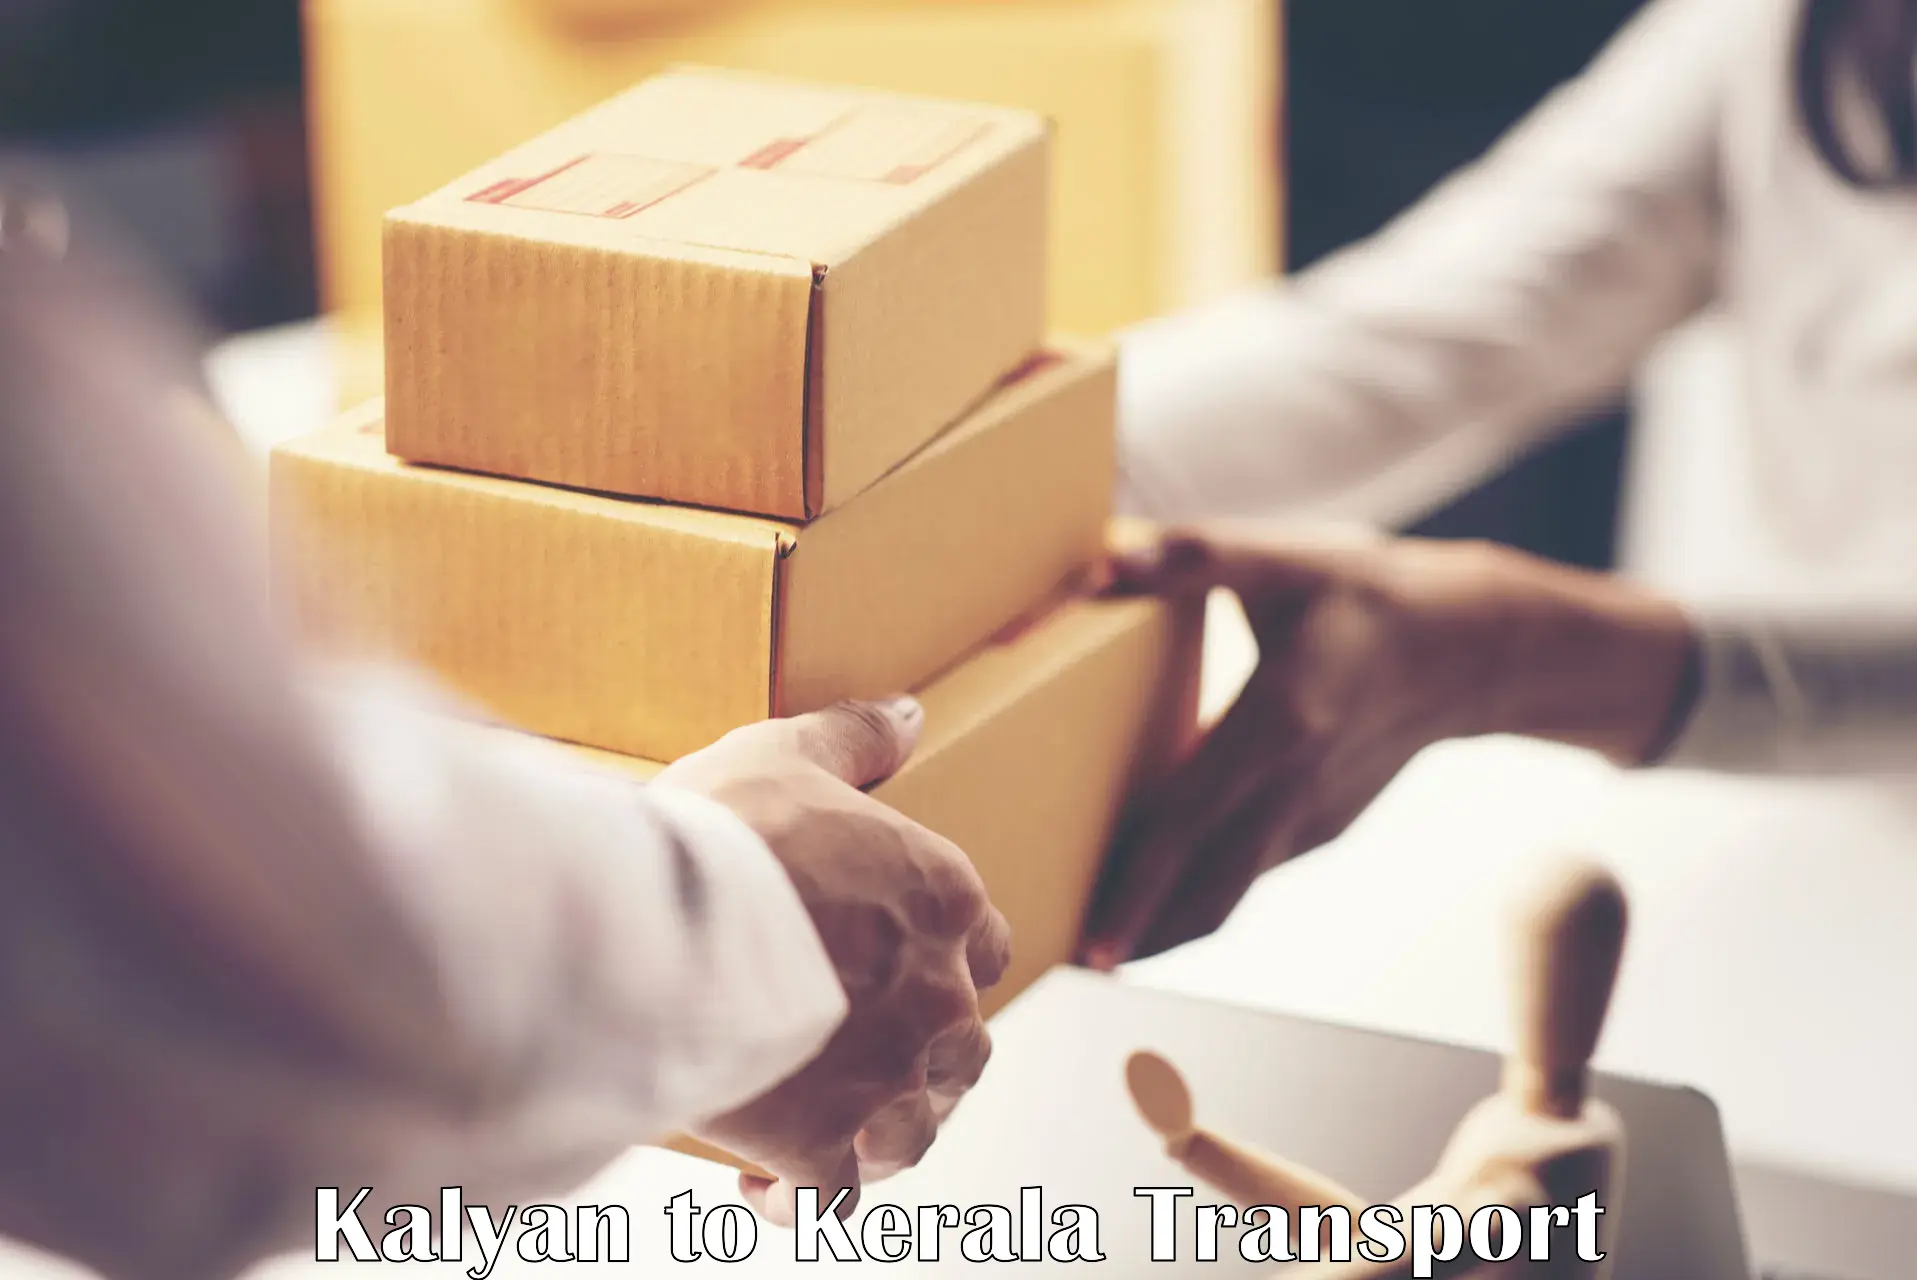 Vehicle parcel service Kalyan to Neyyattinkara